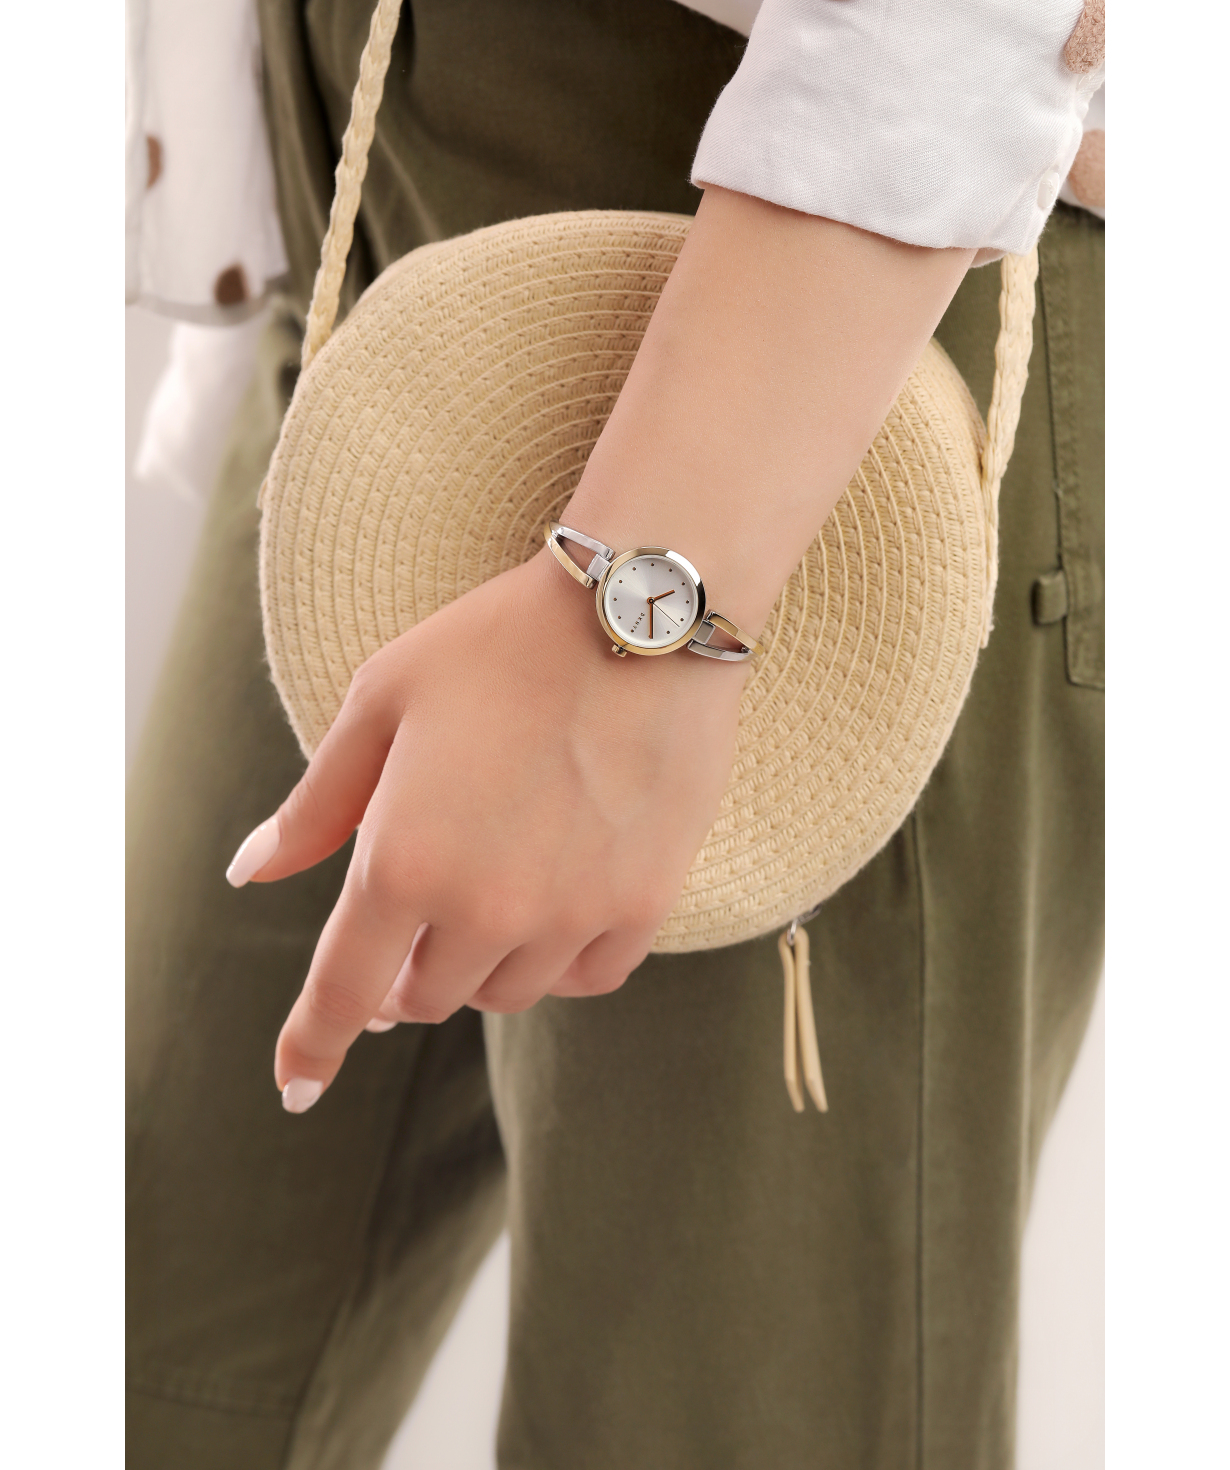 Wristwatch `DKNY` NY2790